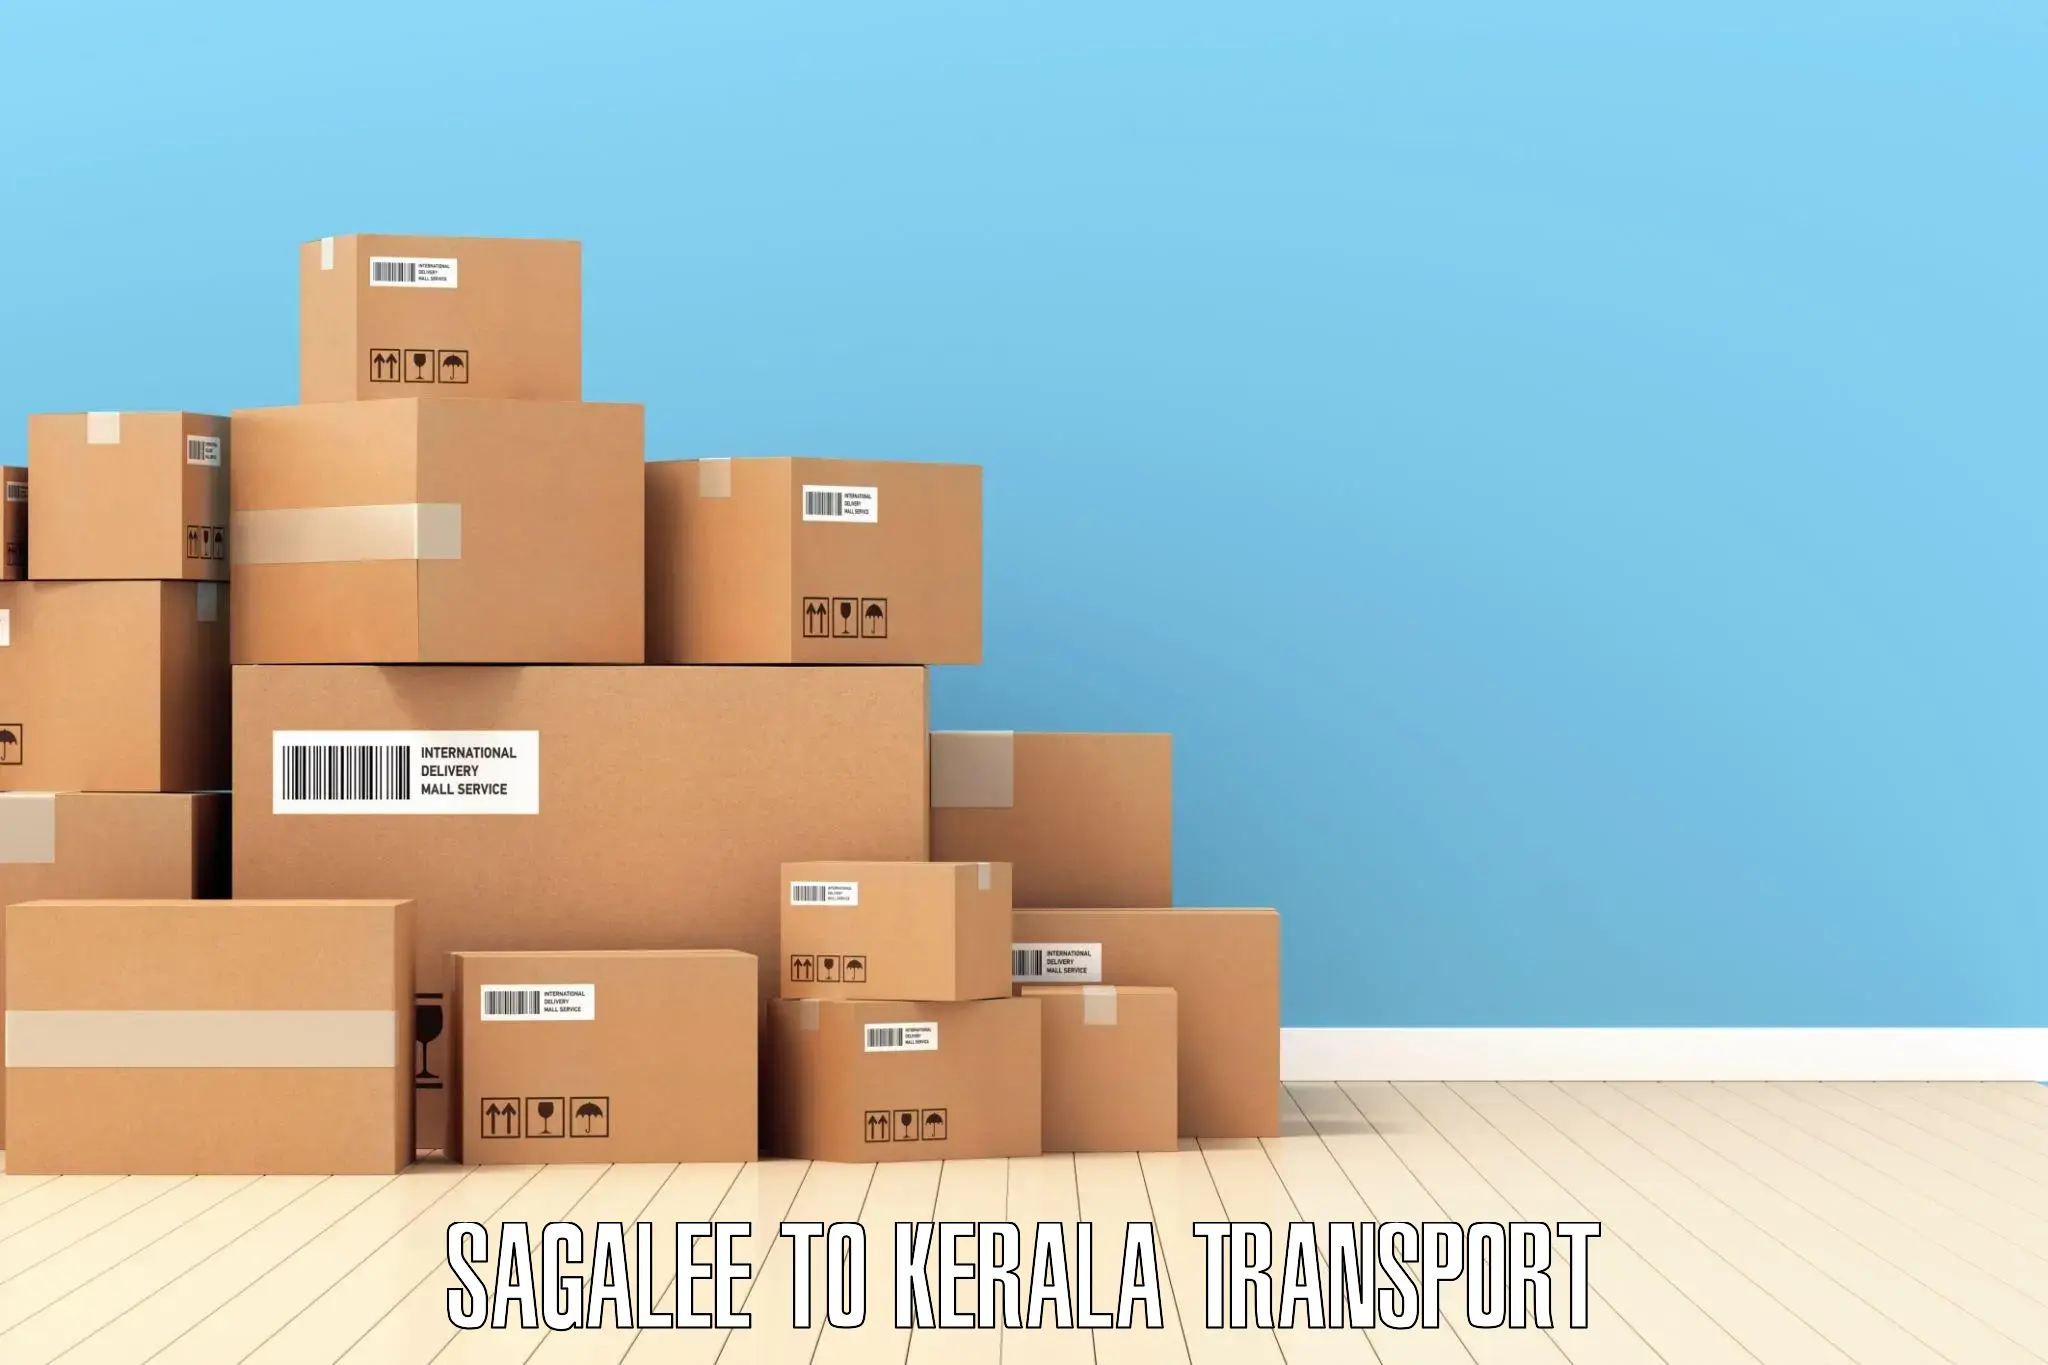 Cargo transport services in Sagalee to Kazhakkoottam